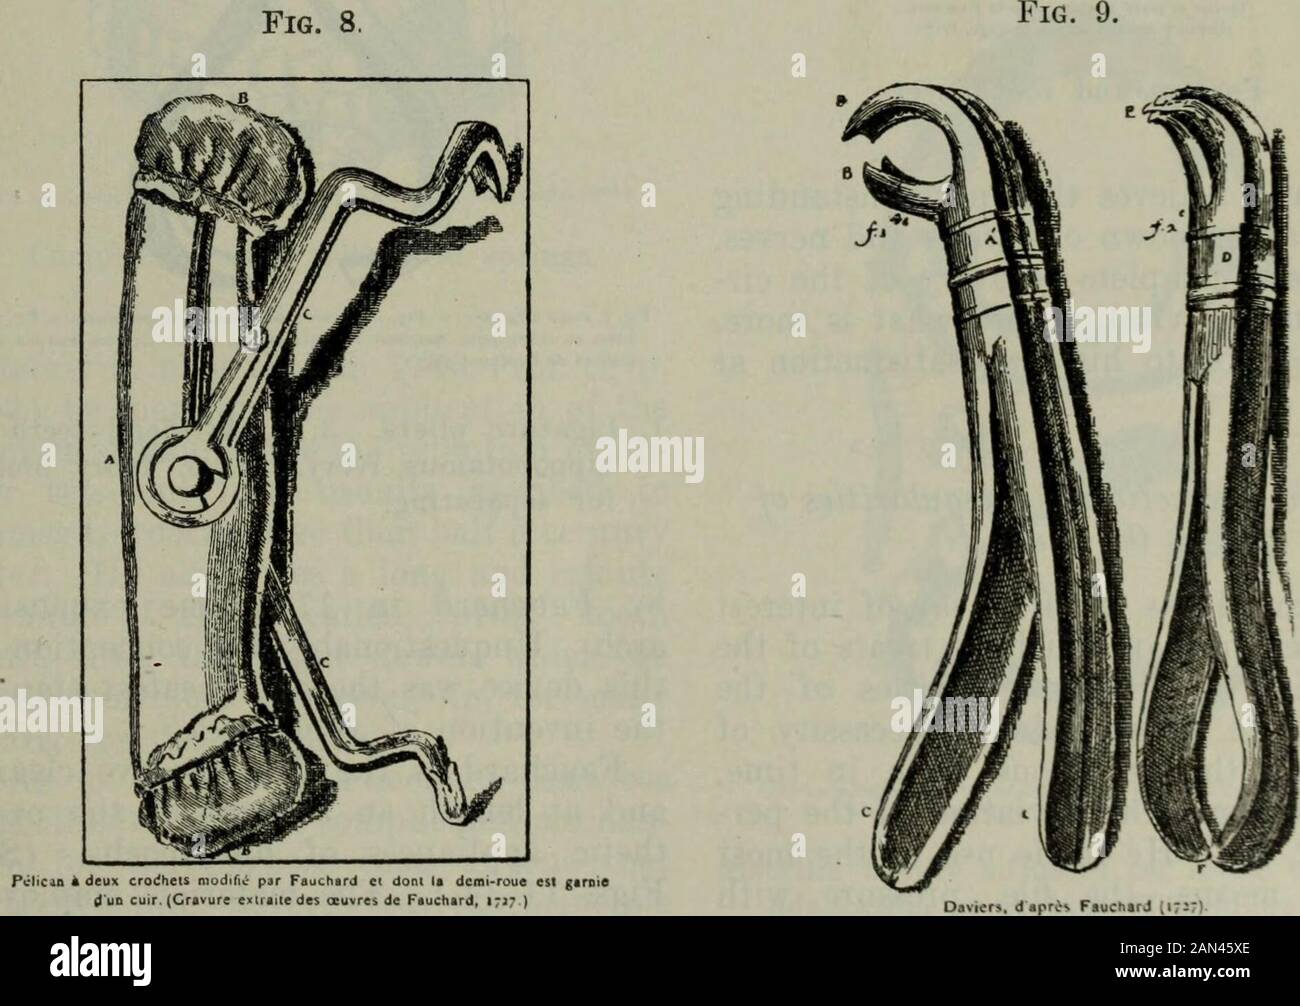 Il cosmo dentale . 1, leva Dritta. 2, corpo di un pellicano con uncini  intercambiabili defuori i suoi ganci. Pelicano a doppio uncino modificato  da Fauchard.[vol. Xlix.-91] Forceps 1242 il COSMOS DEXTAL.